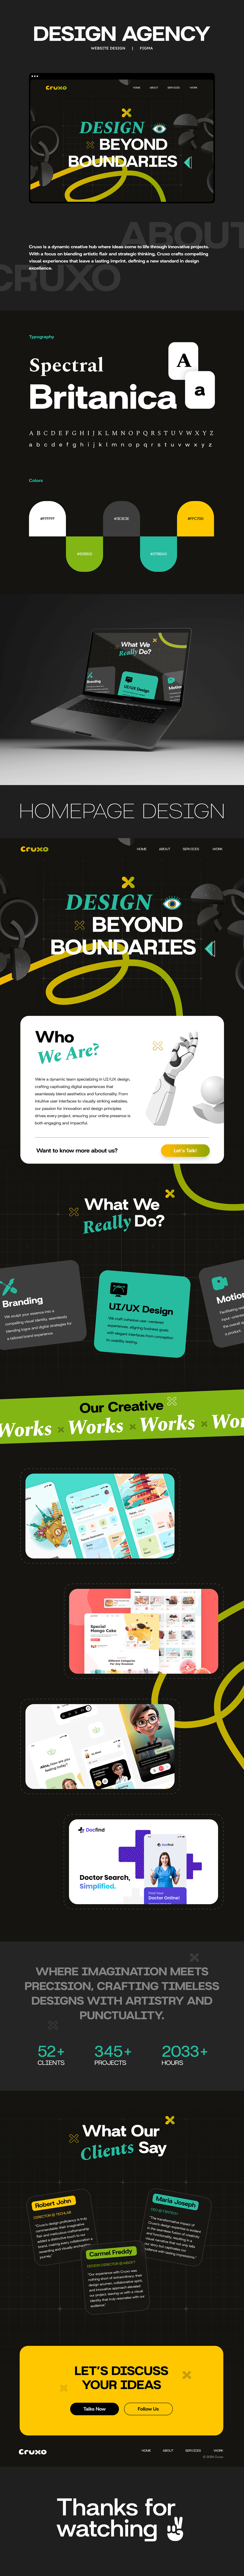 Website Design ui design landing page design Web UI/UX Figma user interface Web Design  Website landing page